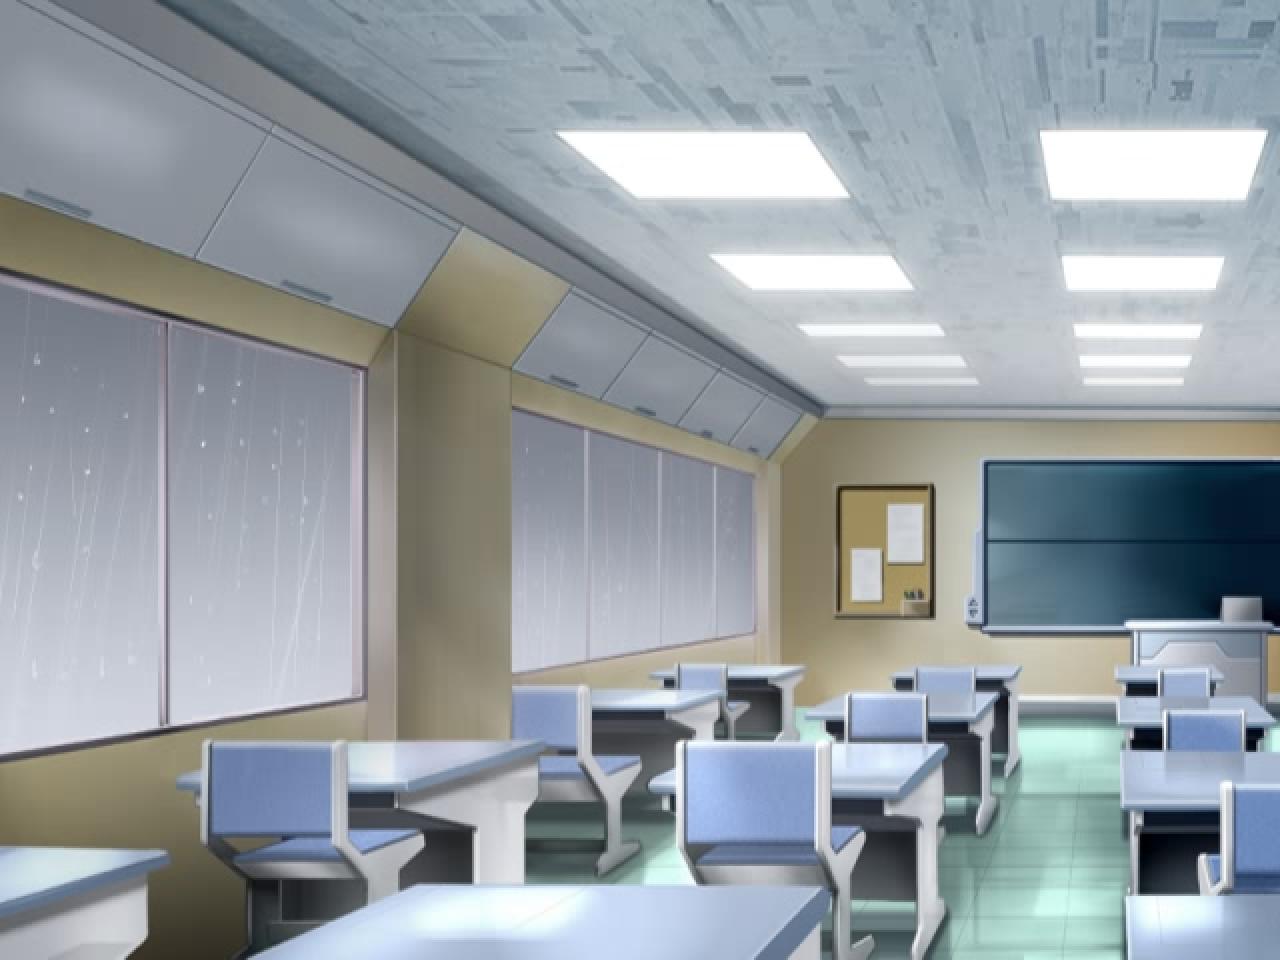 《D.C》中暴雨绵绵的教室背景